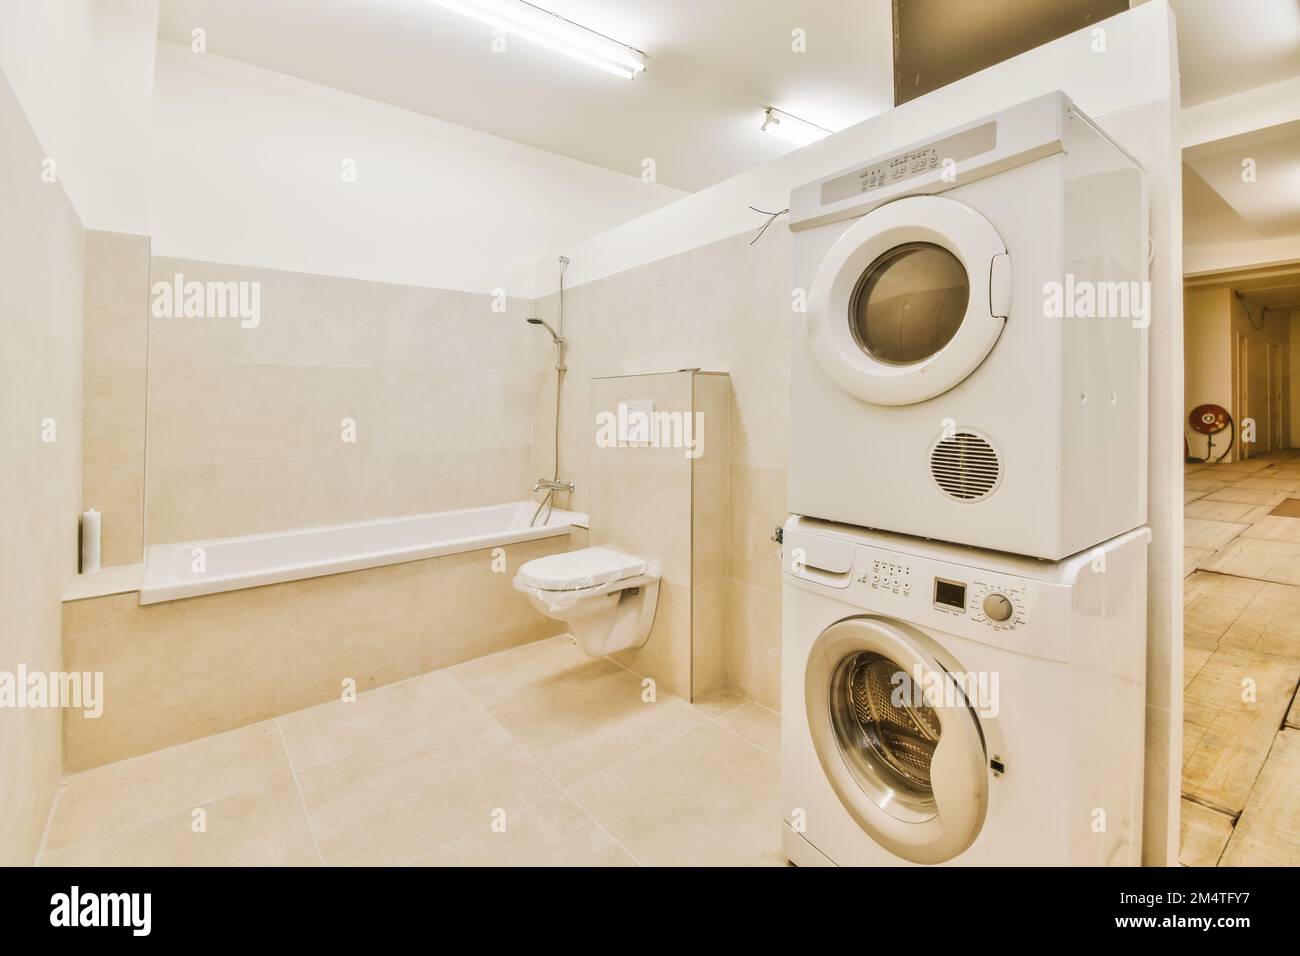 Ein Waschraum mit Waschmaschine, Trockner und Badewanne im Vordergrund -  Bild ist von oben Stockfotografie - Alamy